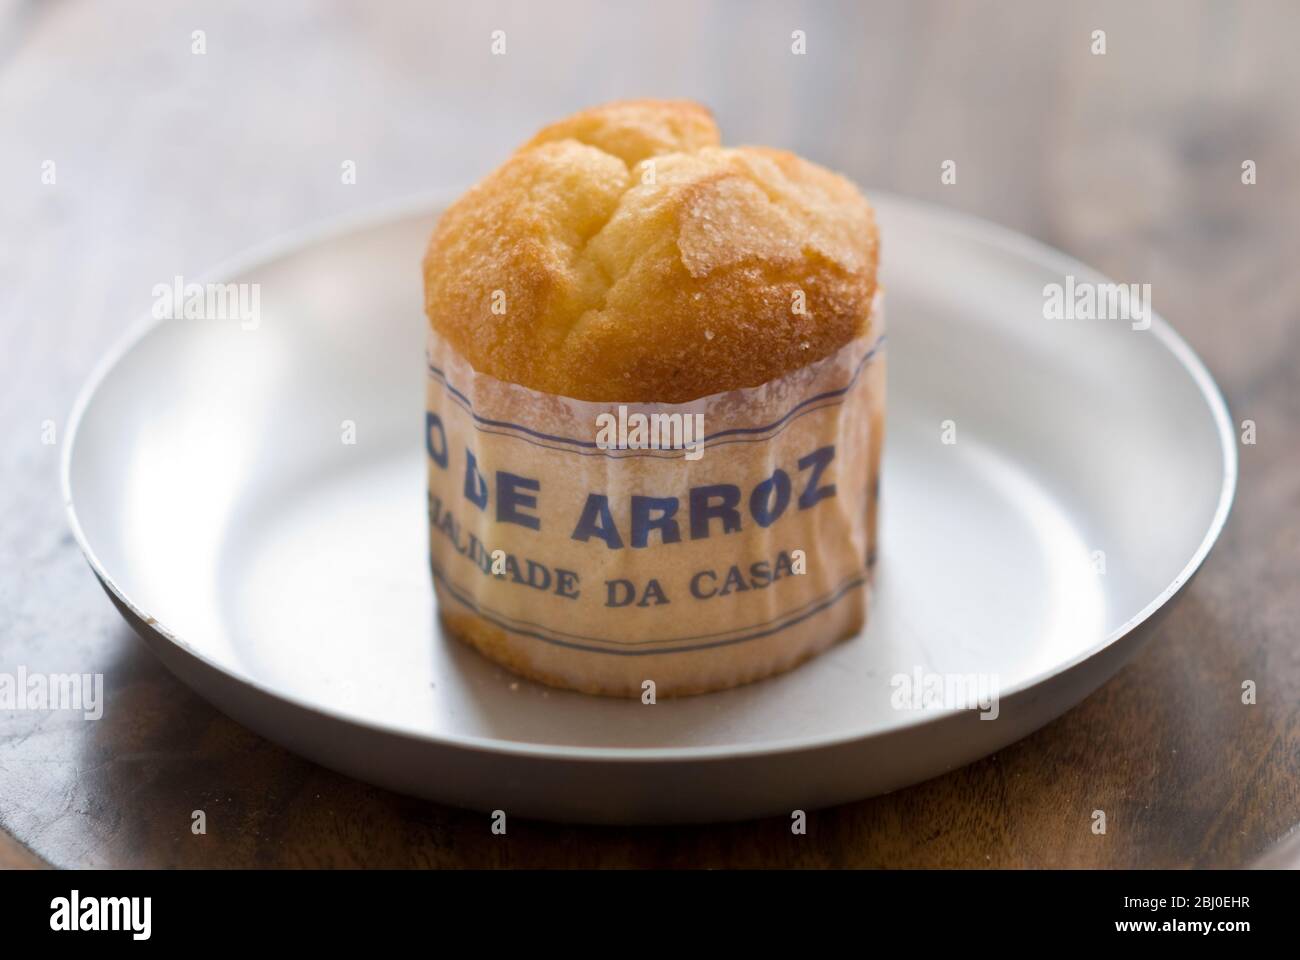 Gâteau de type muffin portugais classique fabriqué avec du riz dans un emballage en papier sur une plaque métallique, avec une tasse de café noir - Banque D'Images